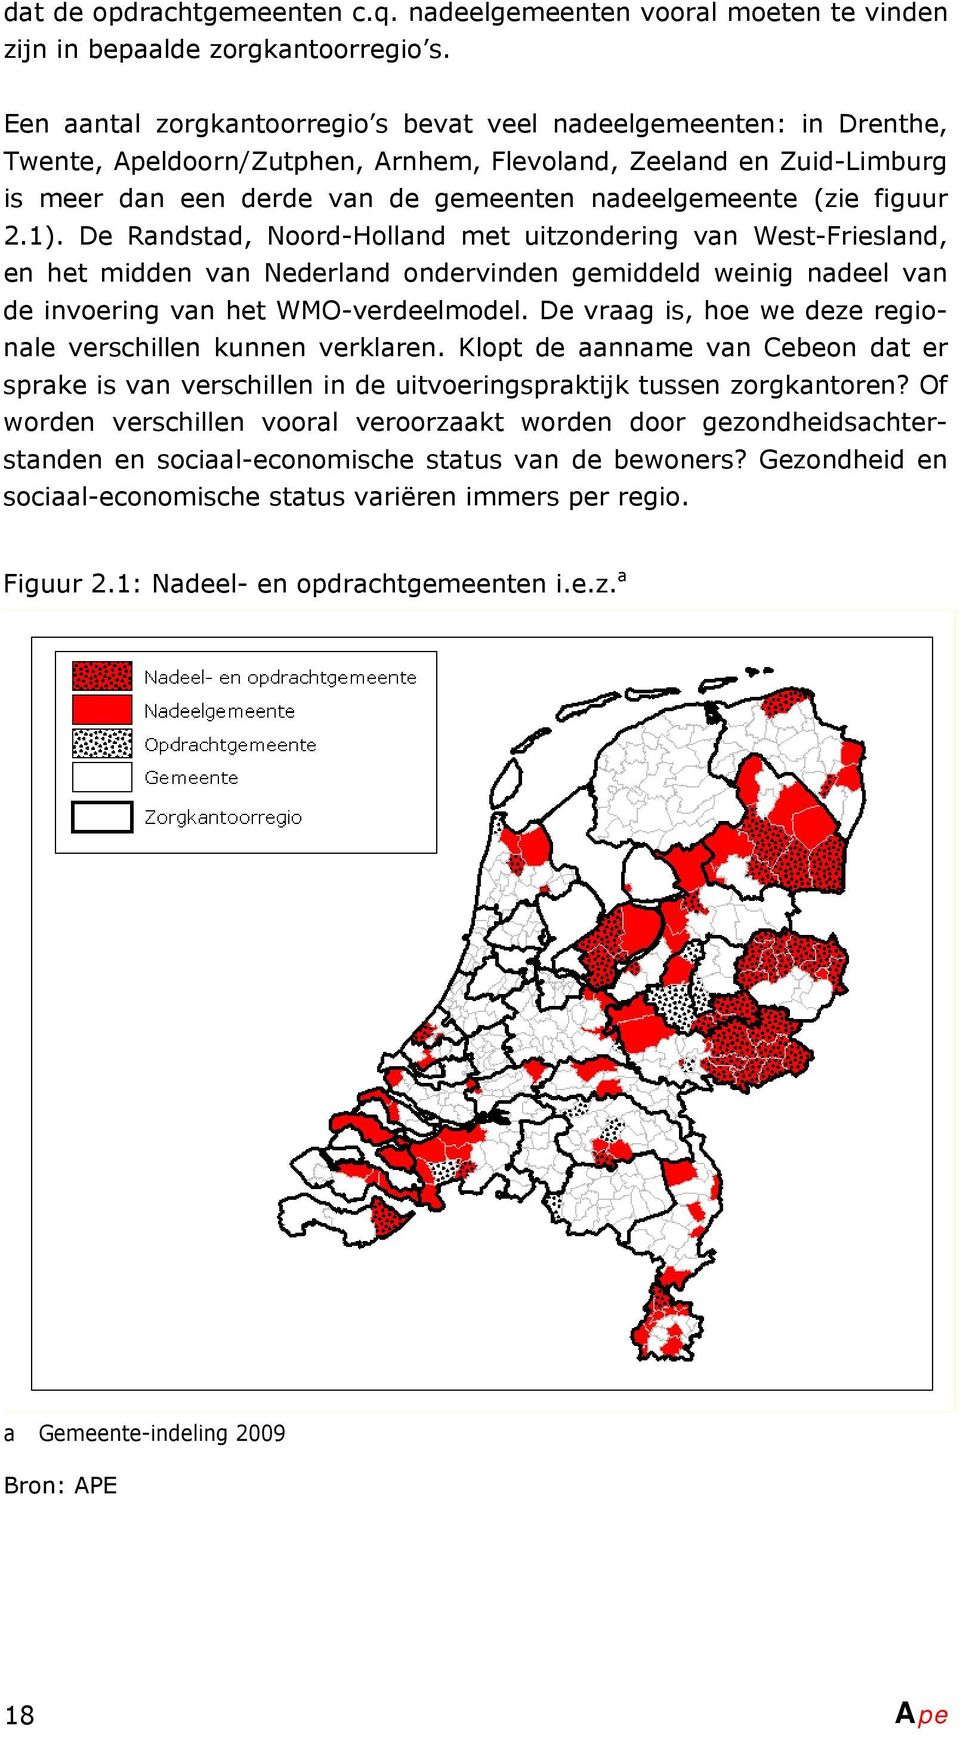 figuur 2.1). De Randstad, Noord-Holland met uitzondering van West-Friesland, en het midden van Nederland ondervinden gemiddeld weinig nadeel van de invoering van het WMO-verdeelmodel.